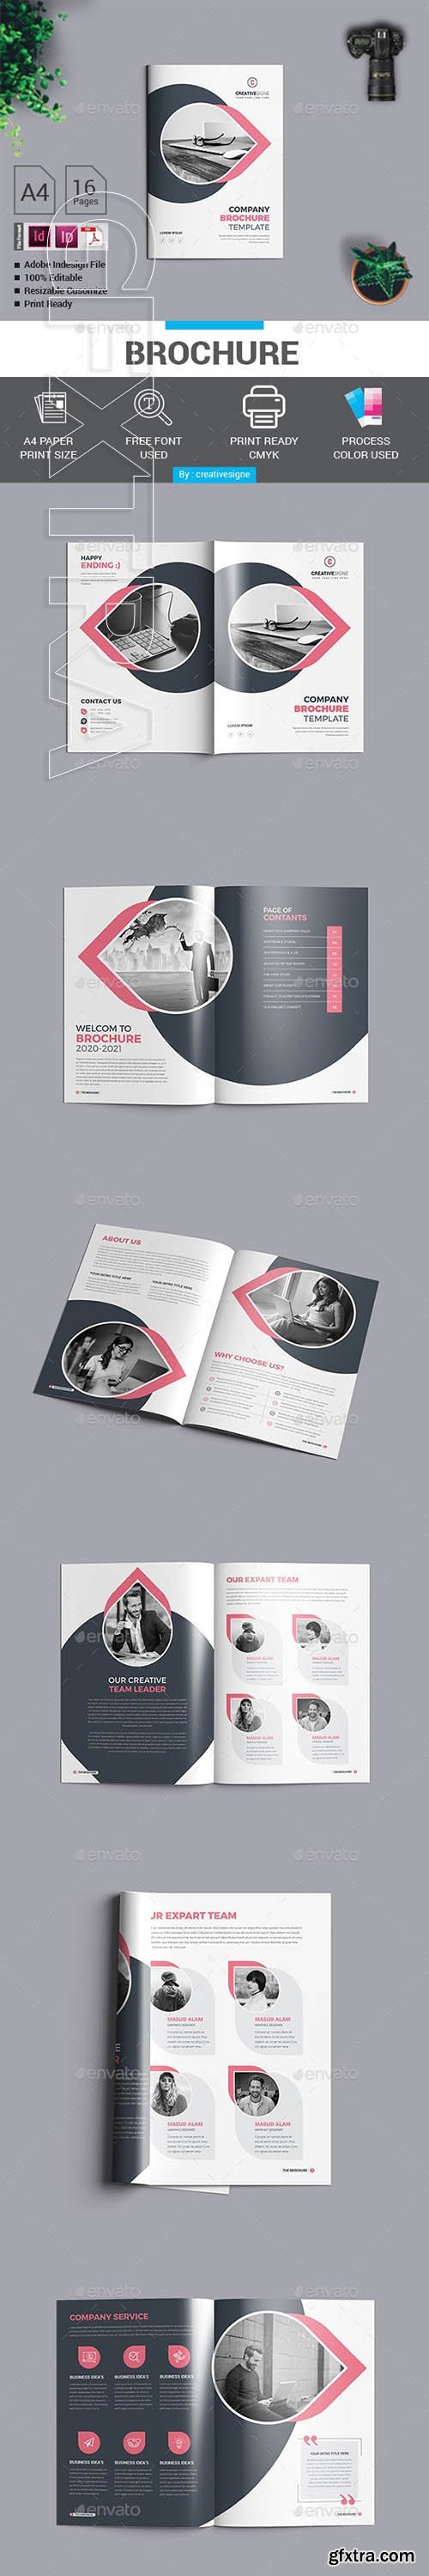 GraphicRiver - Brochure 26175930